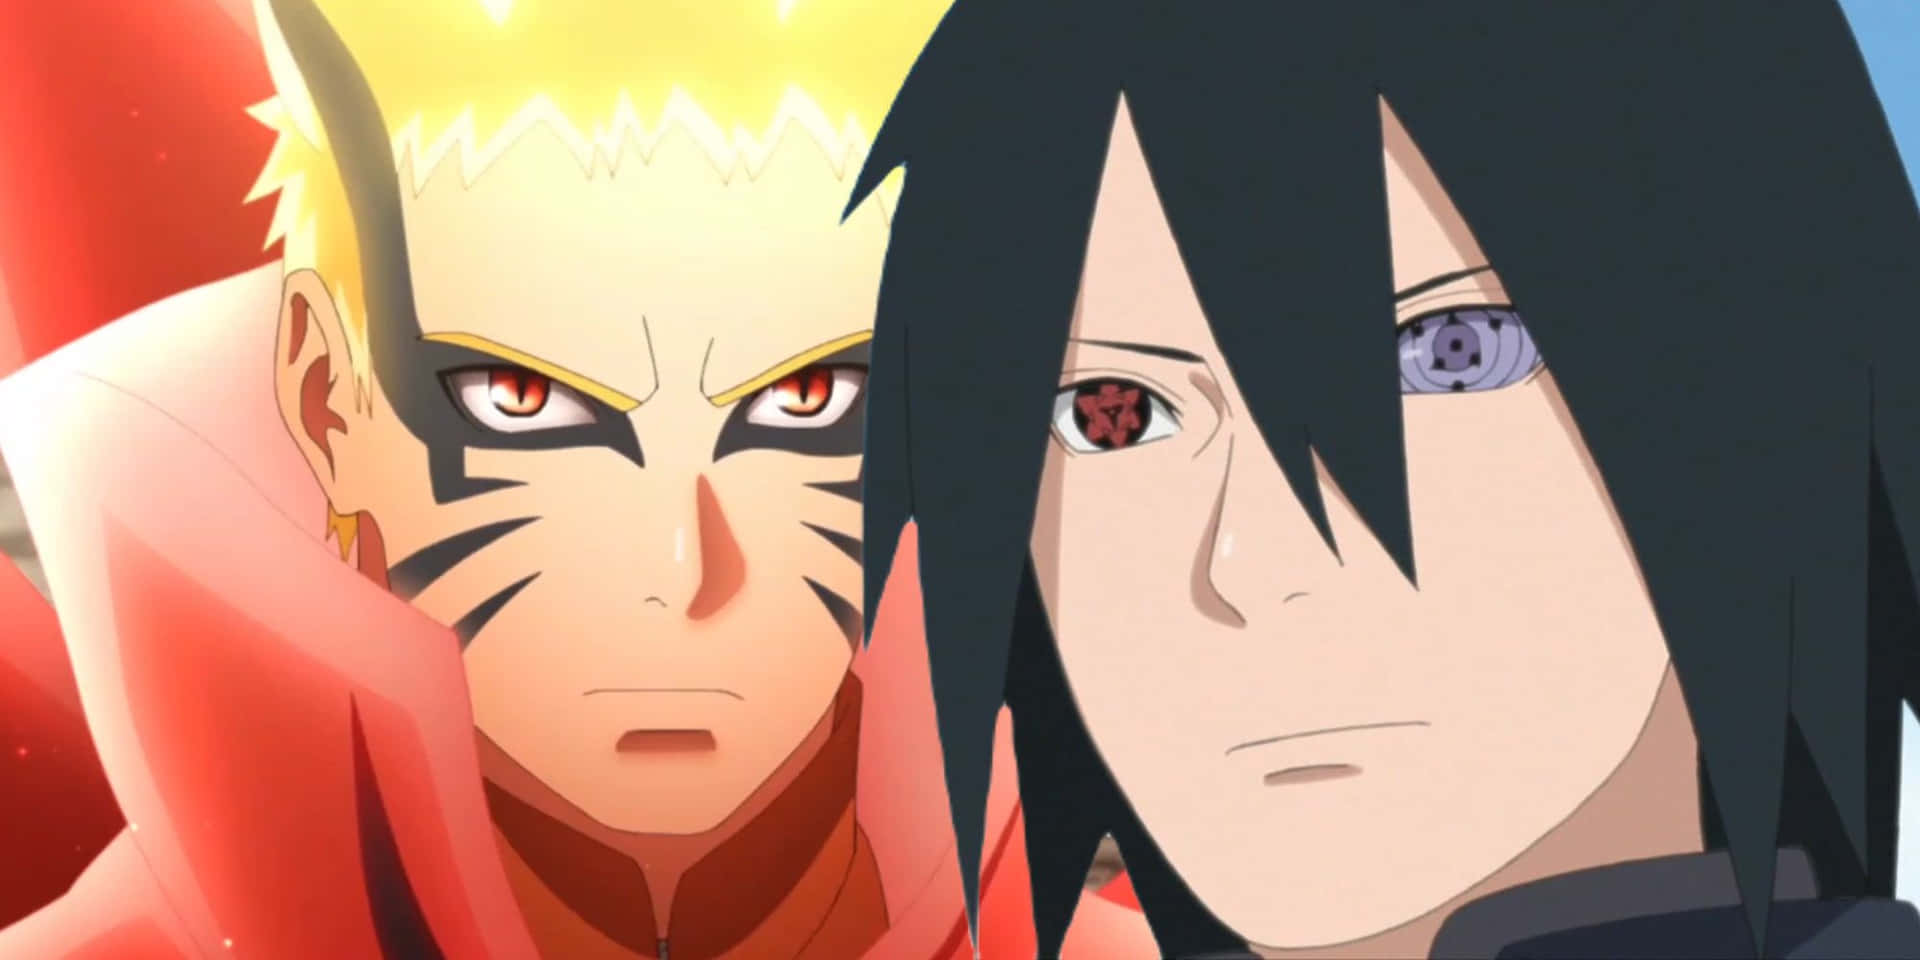 Duerivali Si Incontrano Finalmente, Sasuke (a Sinistra) E Naruto (a Destra)